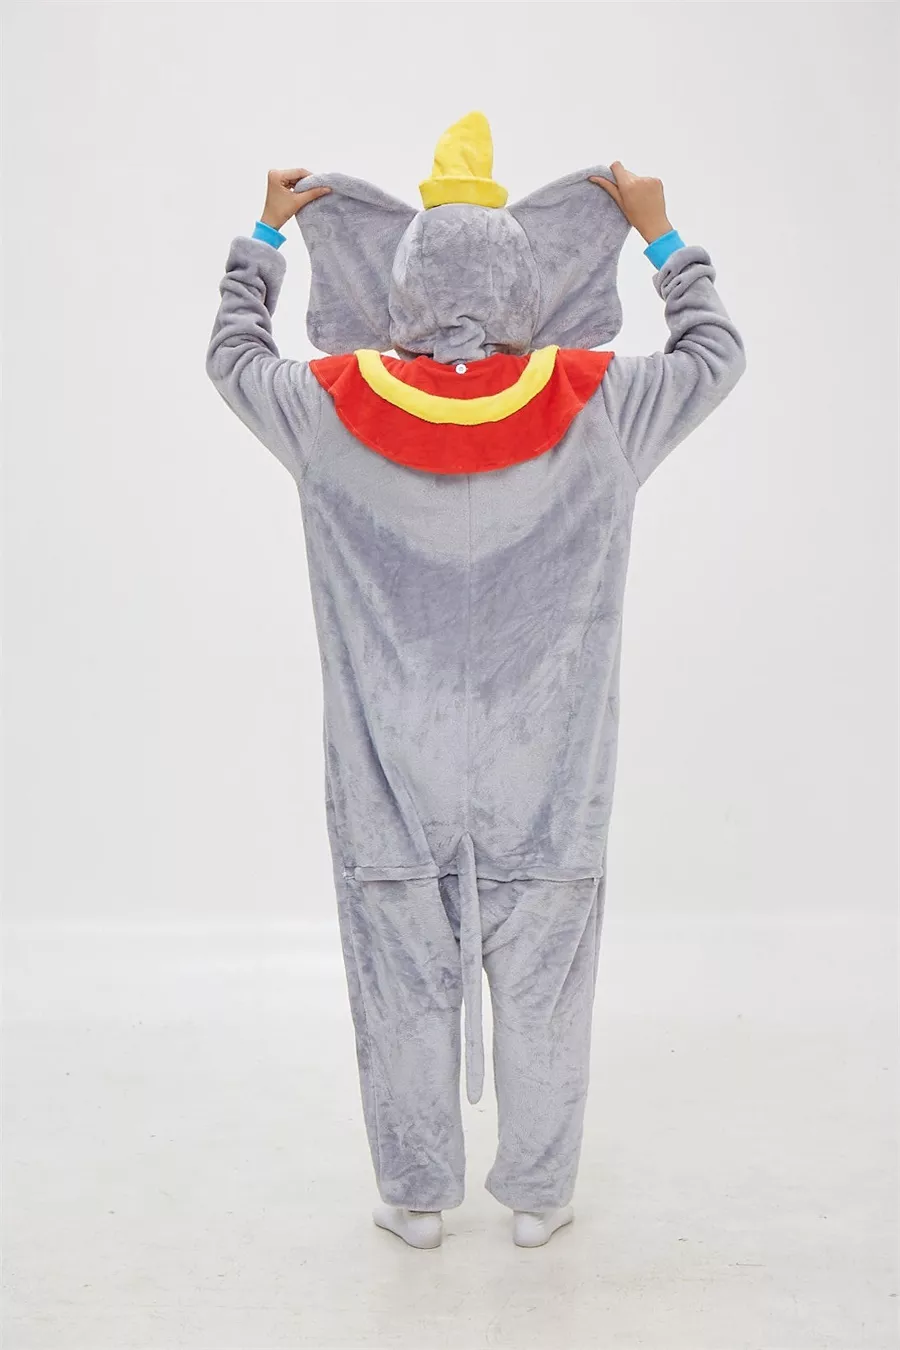 Pijama Adulto Dumbo, pijama de desenho animado, cosplay kigurumi, roupa de dormir 5